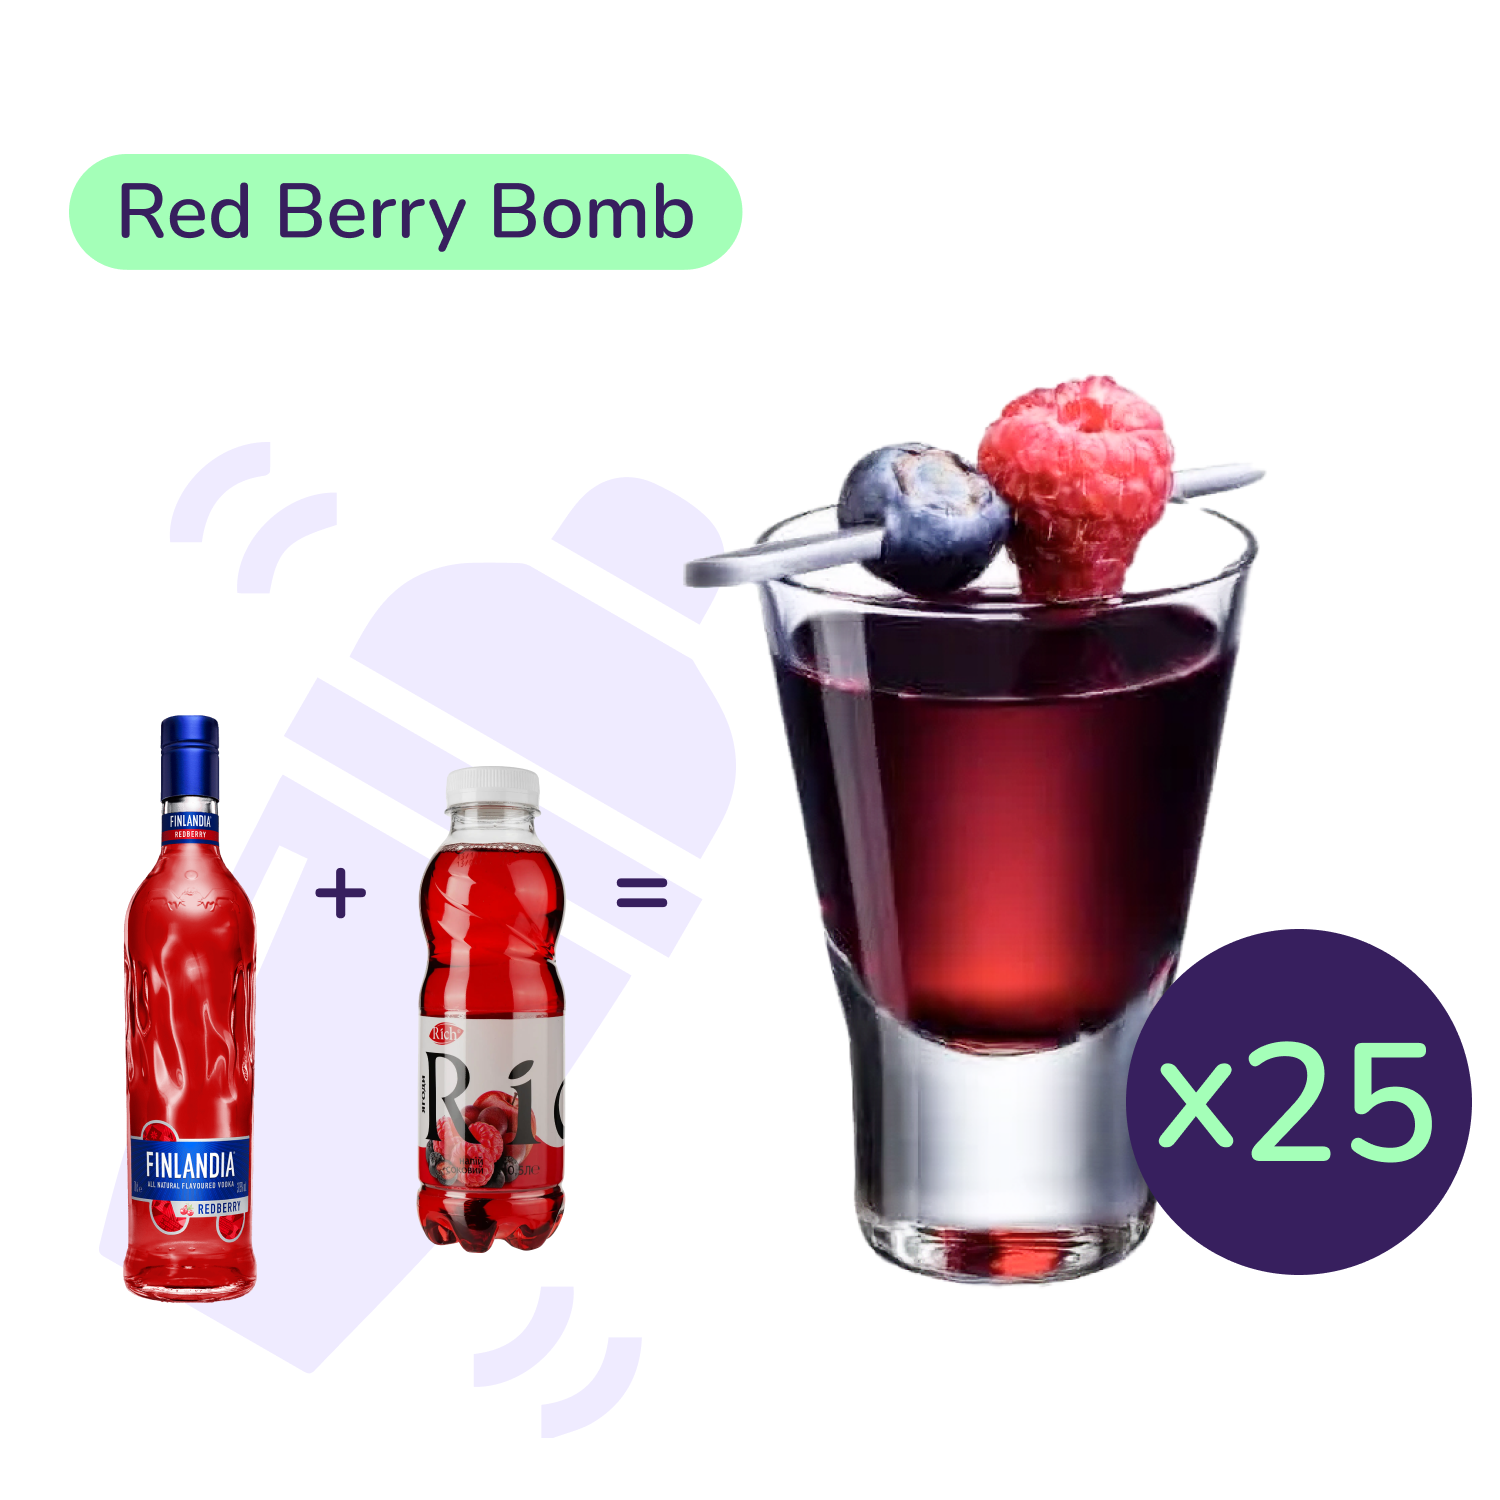 Коктейль Red Berry Bomb (набор ингредиентов) х25 на основе Finlandia - фото 1